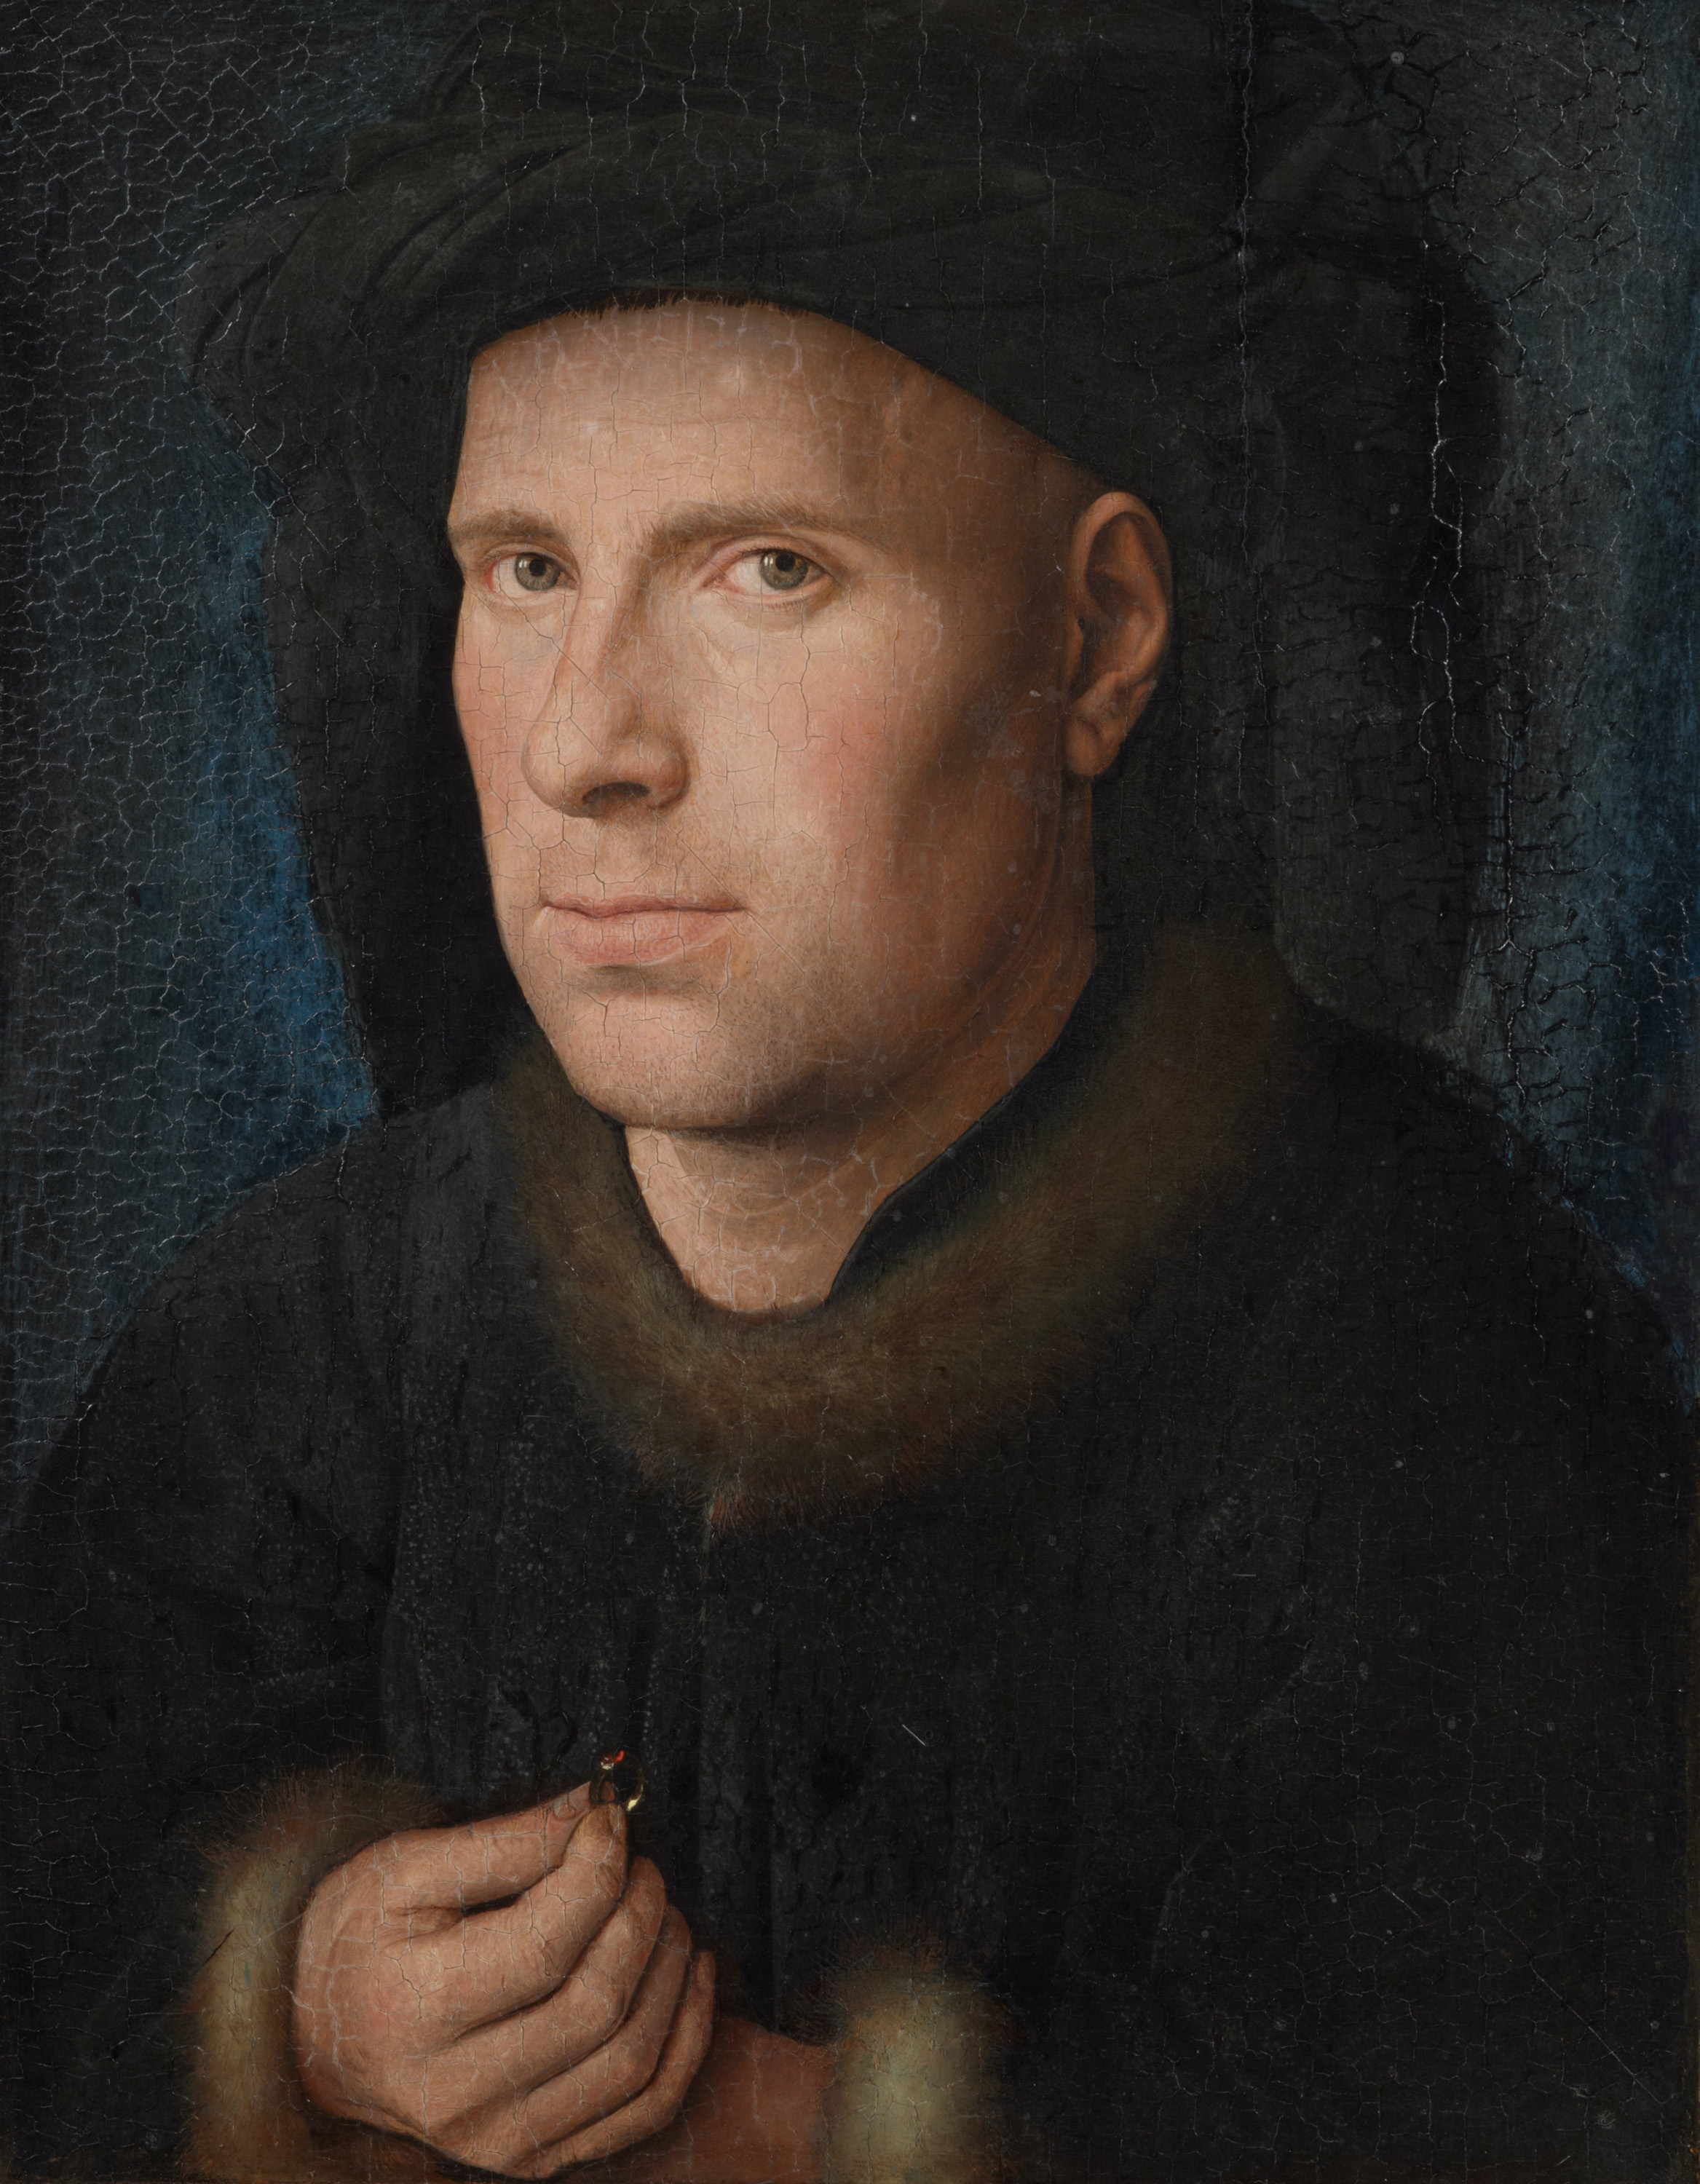 Ritratto di Jan de Leeuw by Jan van Eyck - 1436 - 33 cm × 27,5 cm Kunsthistorisches Museum